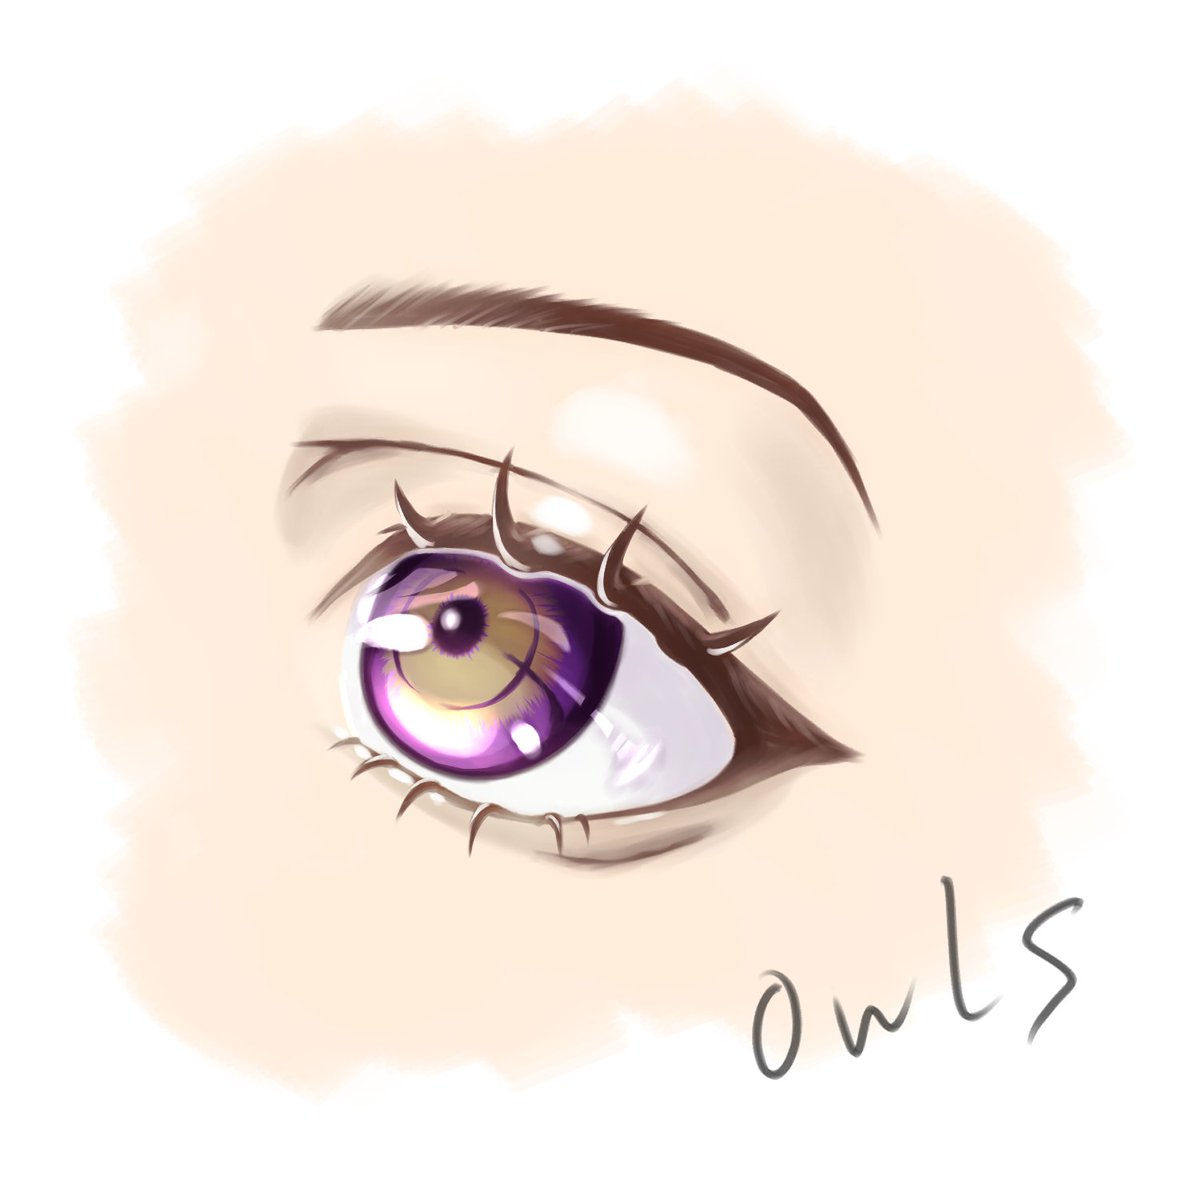 「#目だけでフォロワーさんを惚れさせる   昨日描いた目を塗りました、ちょうど良い」|owls　ゆっくり反応中。のイラスト